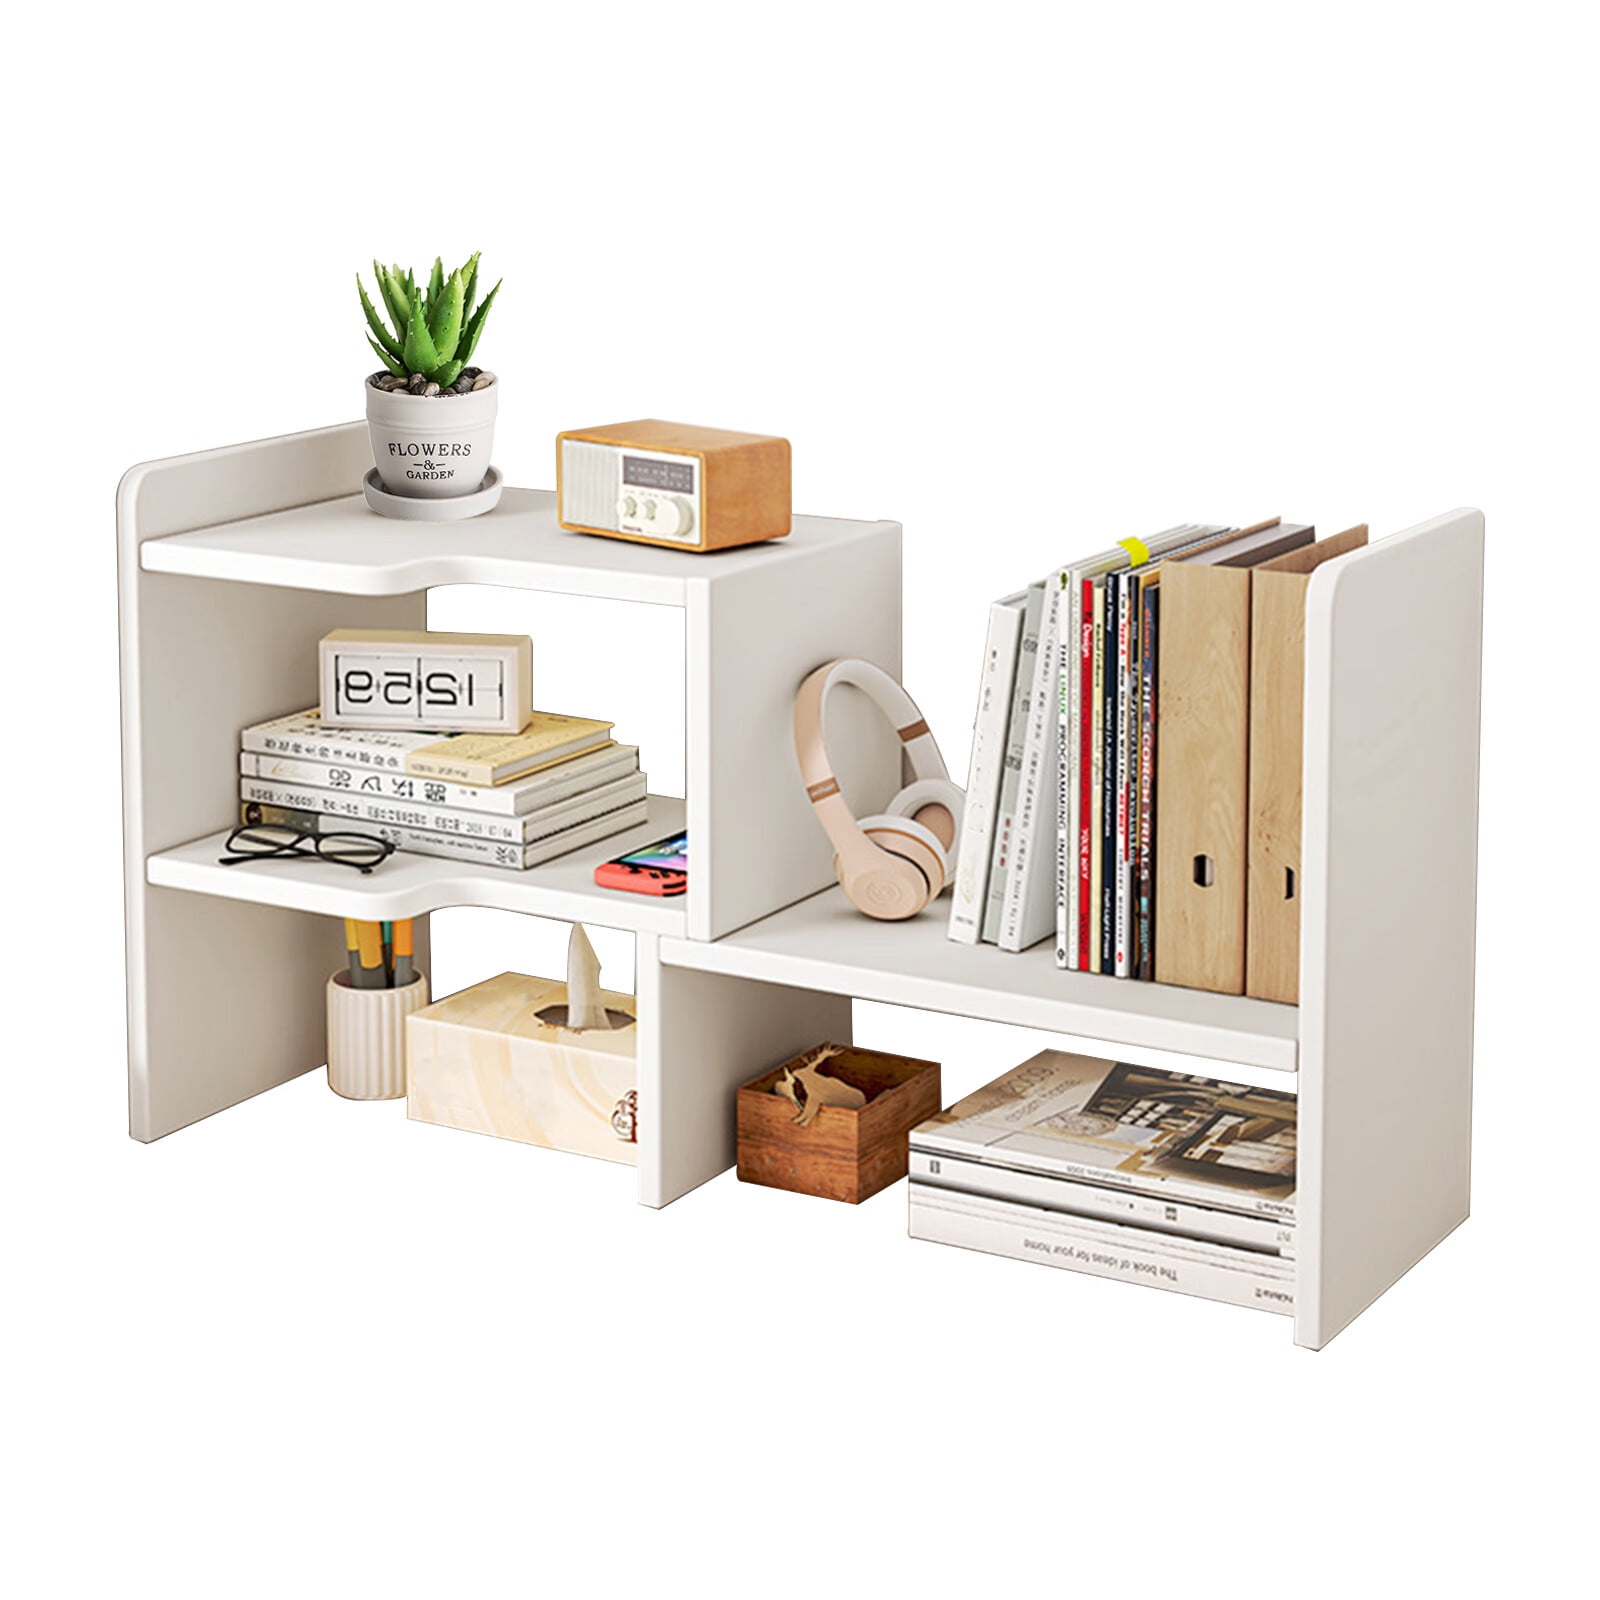 2 Tier Desktop Bookshelf Organization Rack - Adjustable Desk